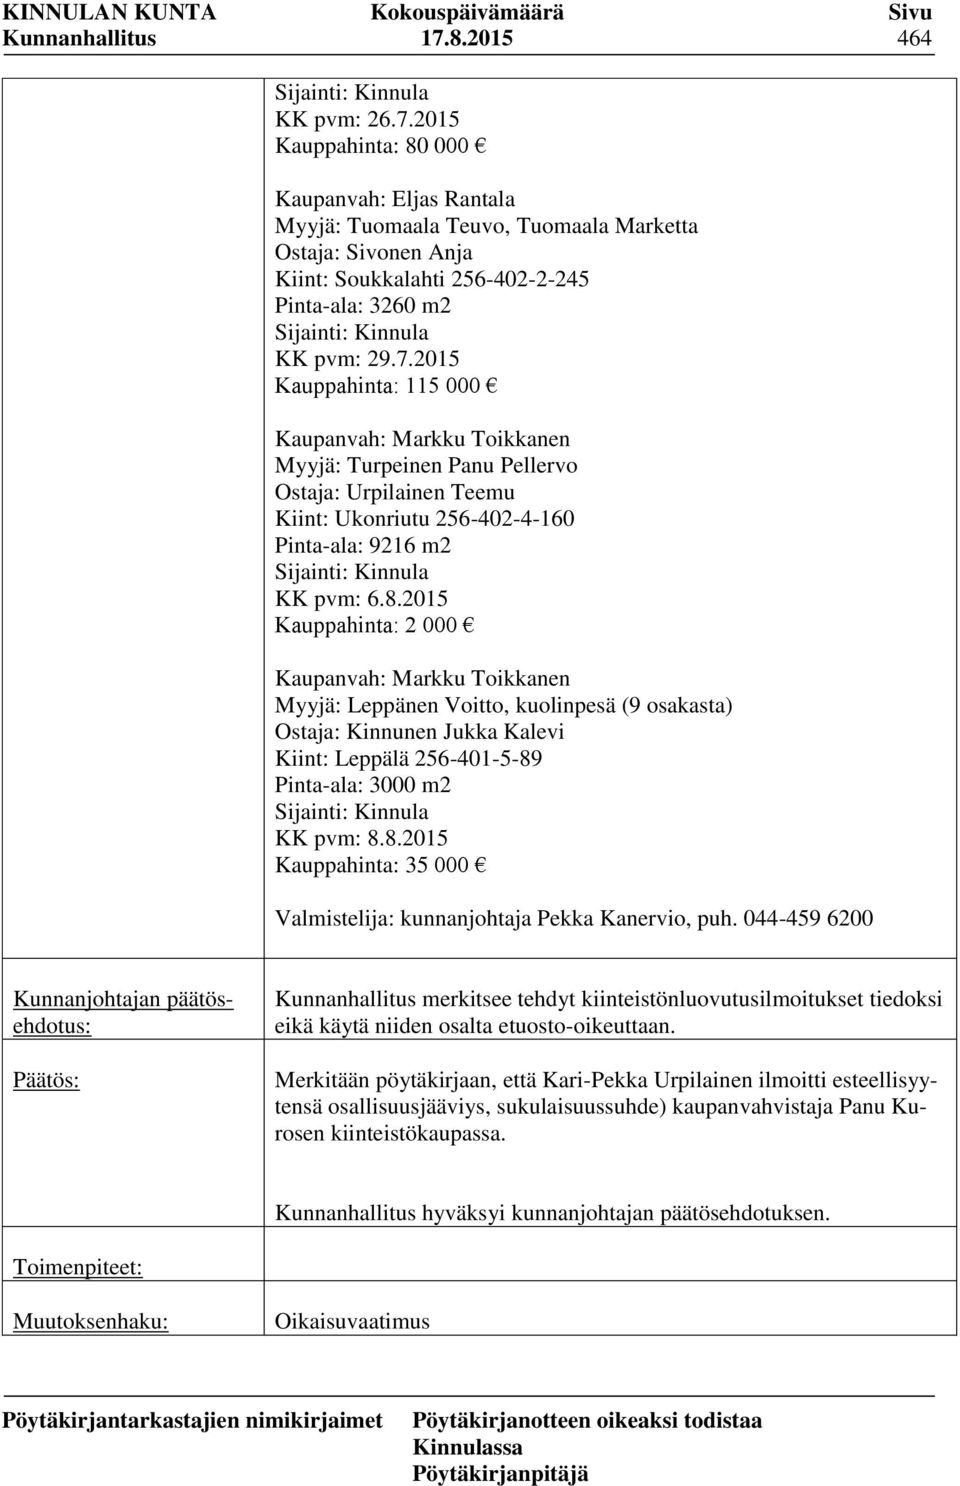 2015 Kauppahinta: 2 000 Kaupanvah: Markku Toikkanen Myyjä: Leppänen Voitto, kuolinpesä (9 osakasta) Ostaja: Kinnunen Jukka Kalevi Kiint: Leppälä 256-401-5-89